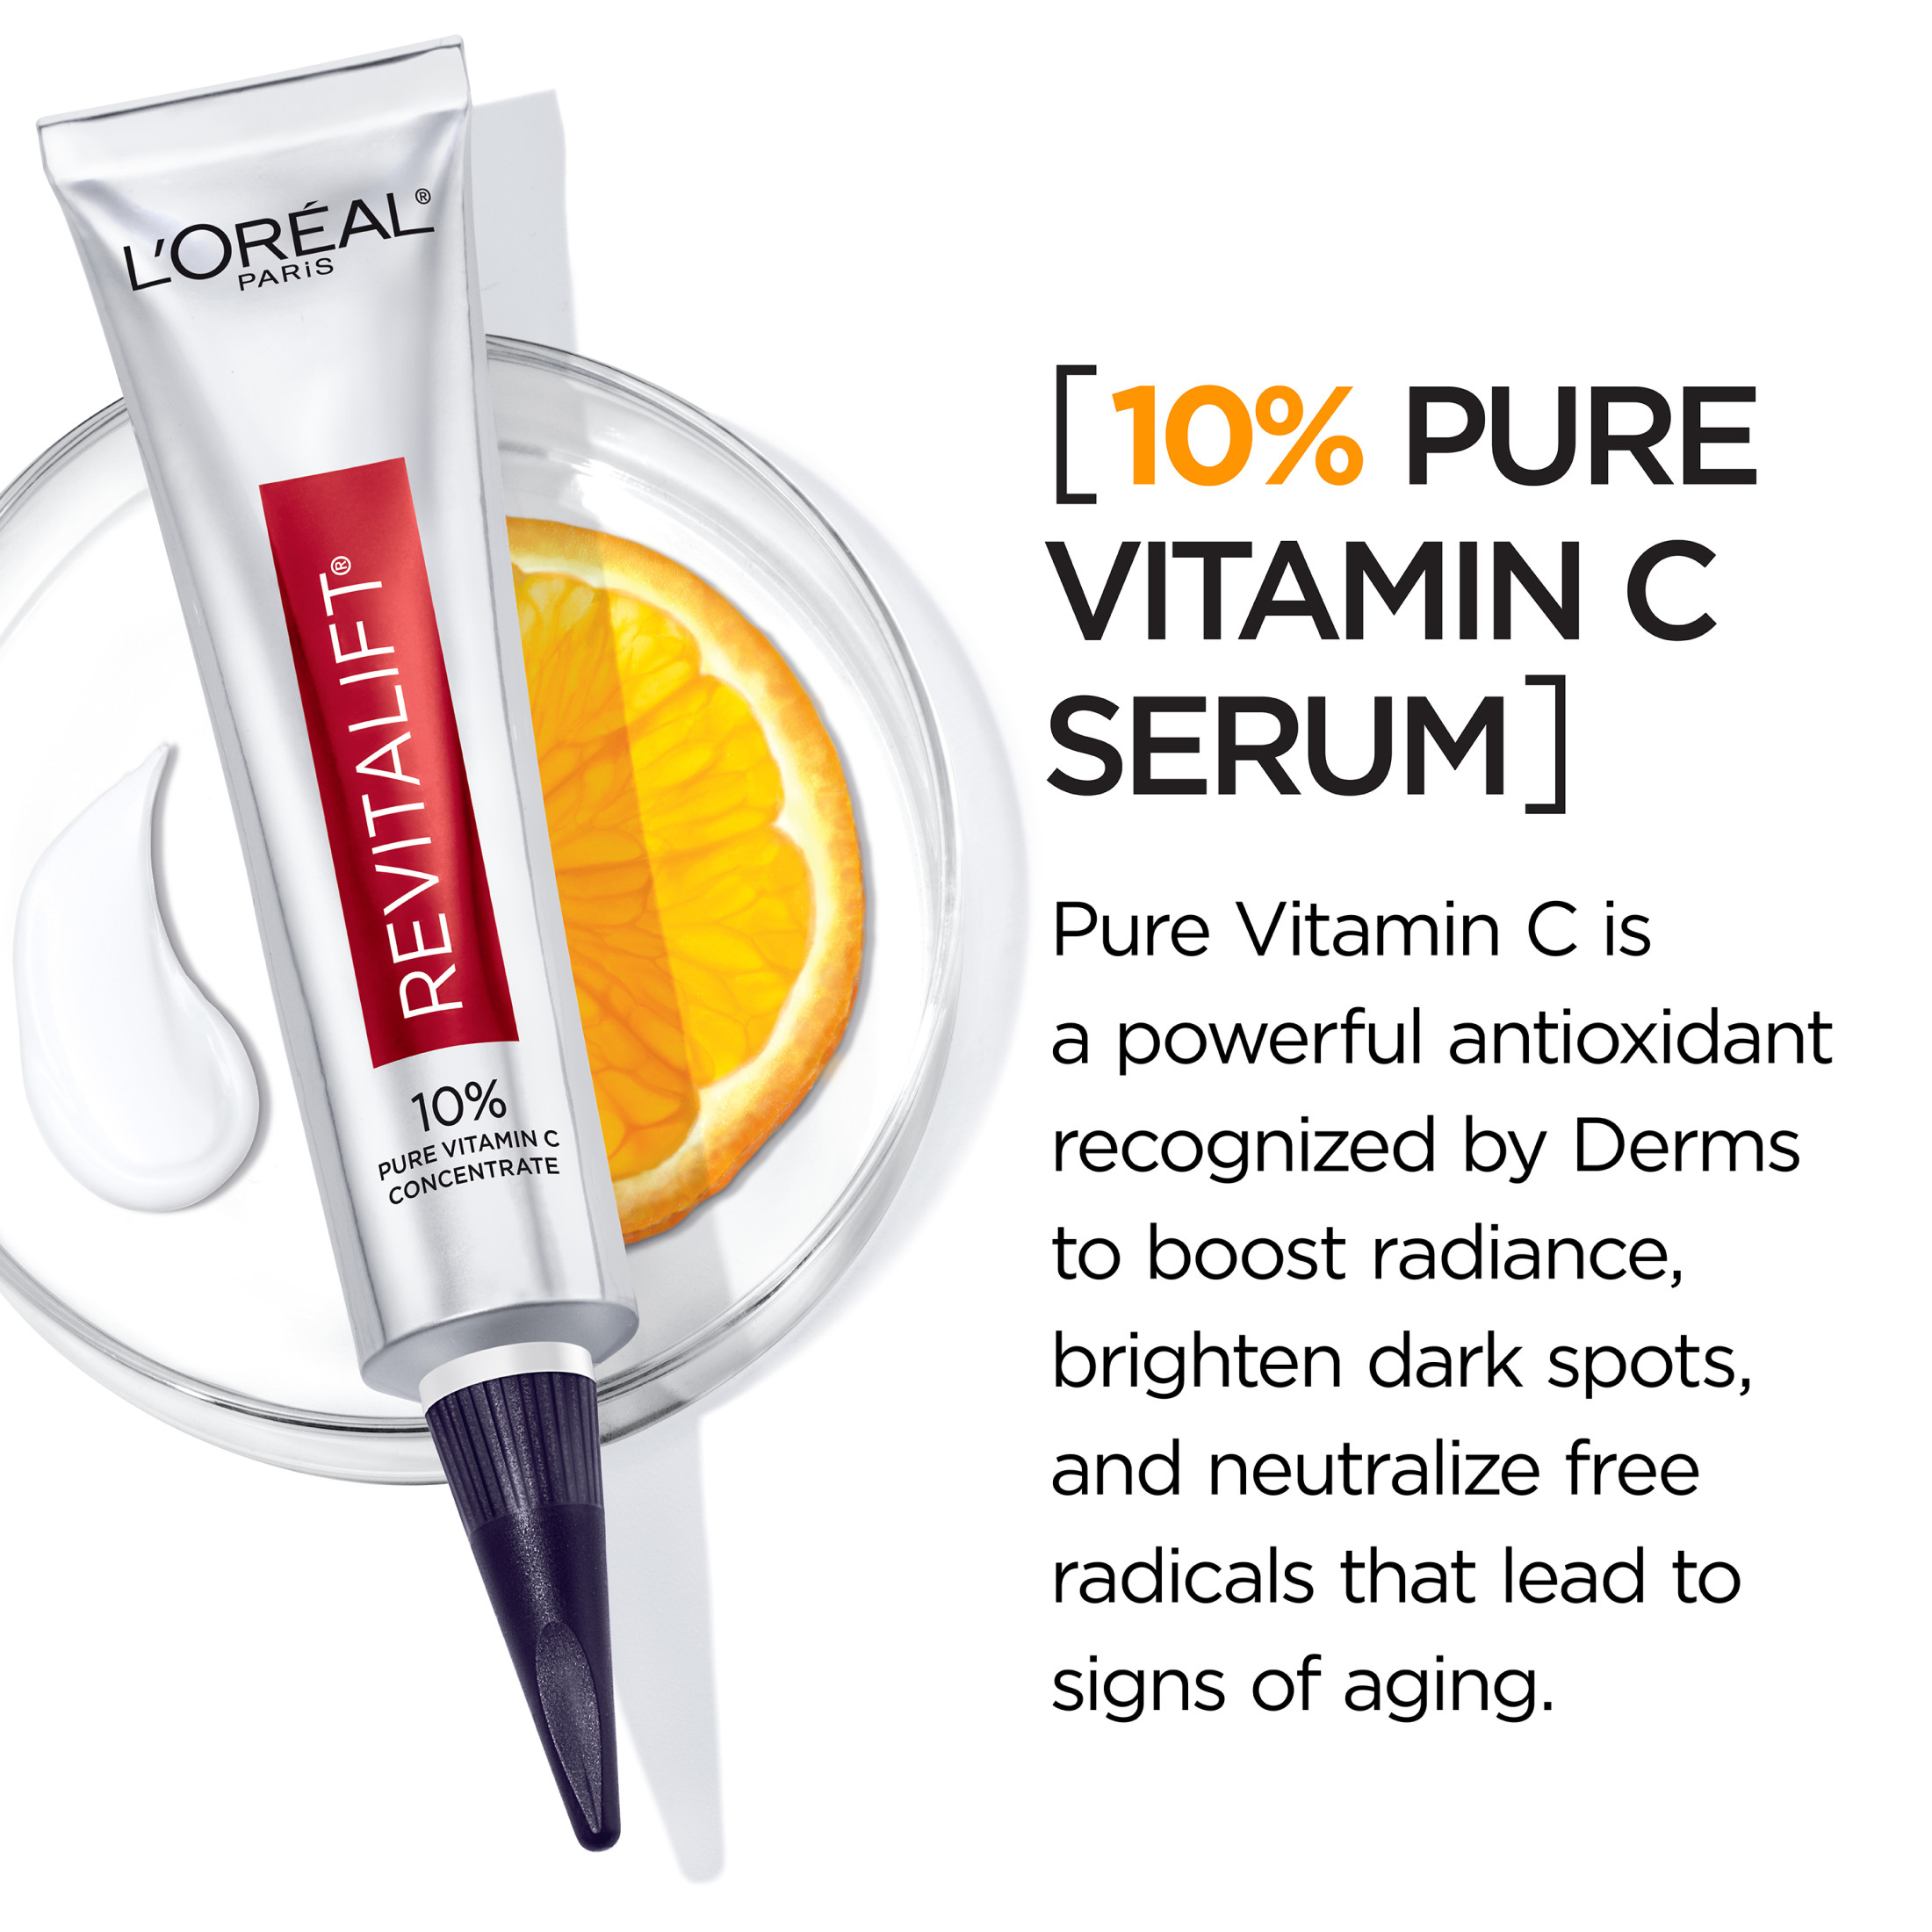 L'Oreal Paris Revitalift Pure Vitamin C Concentrate Serum, 1 fl oz - image 4 of 8